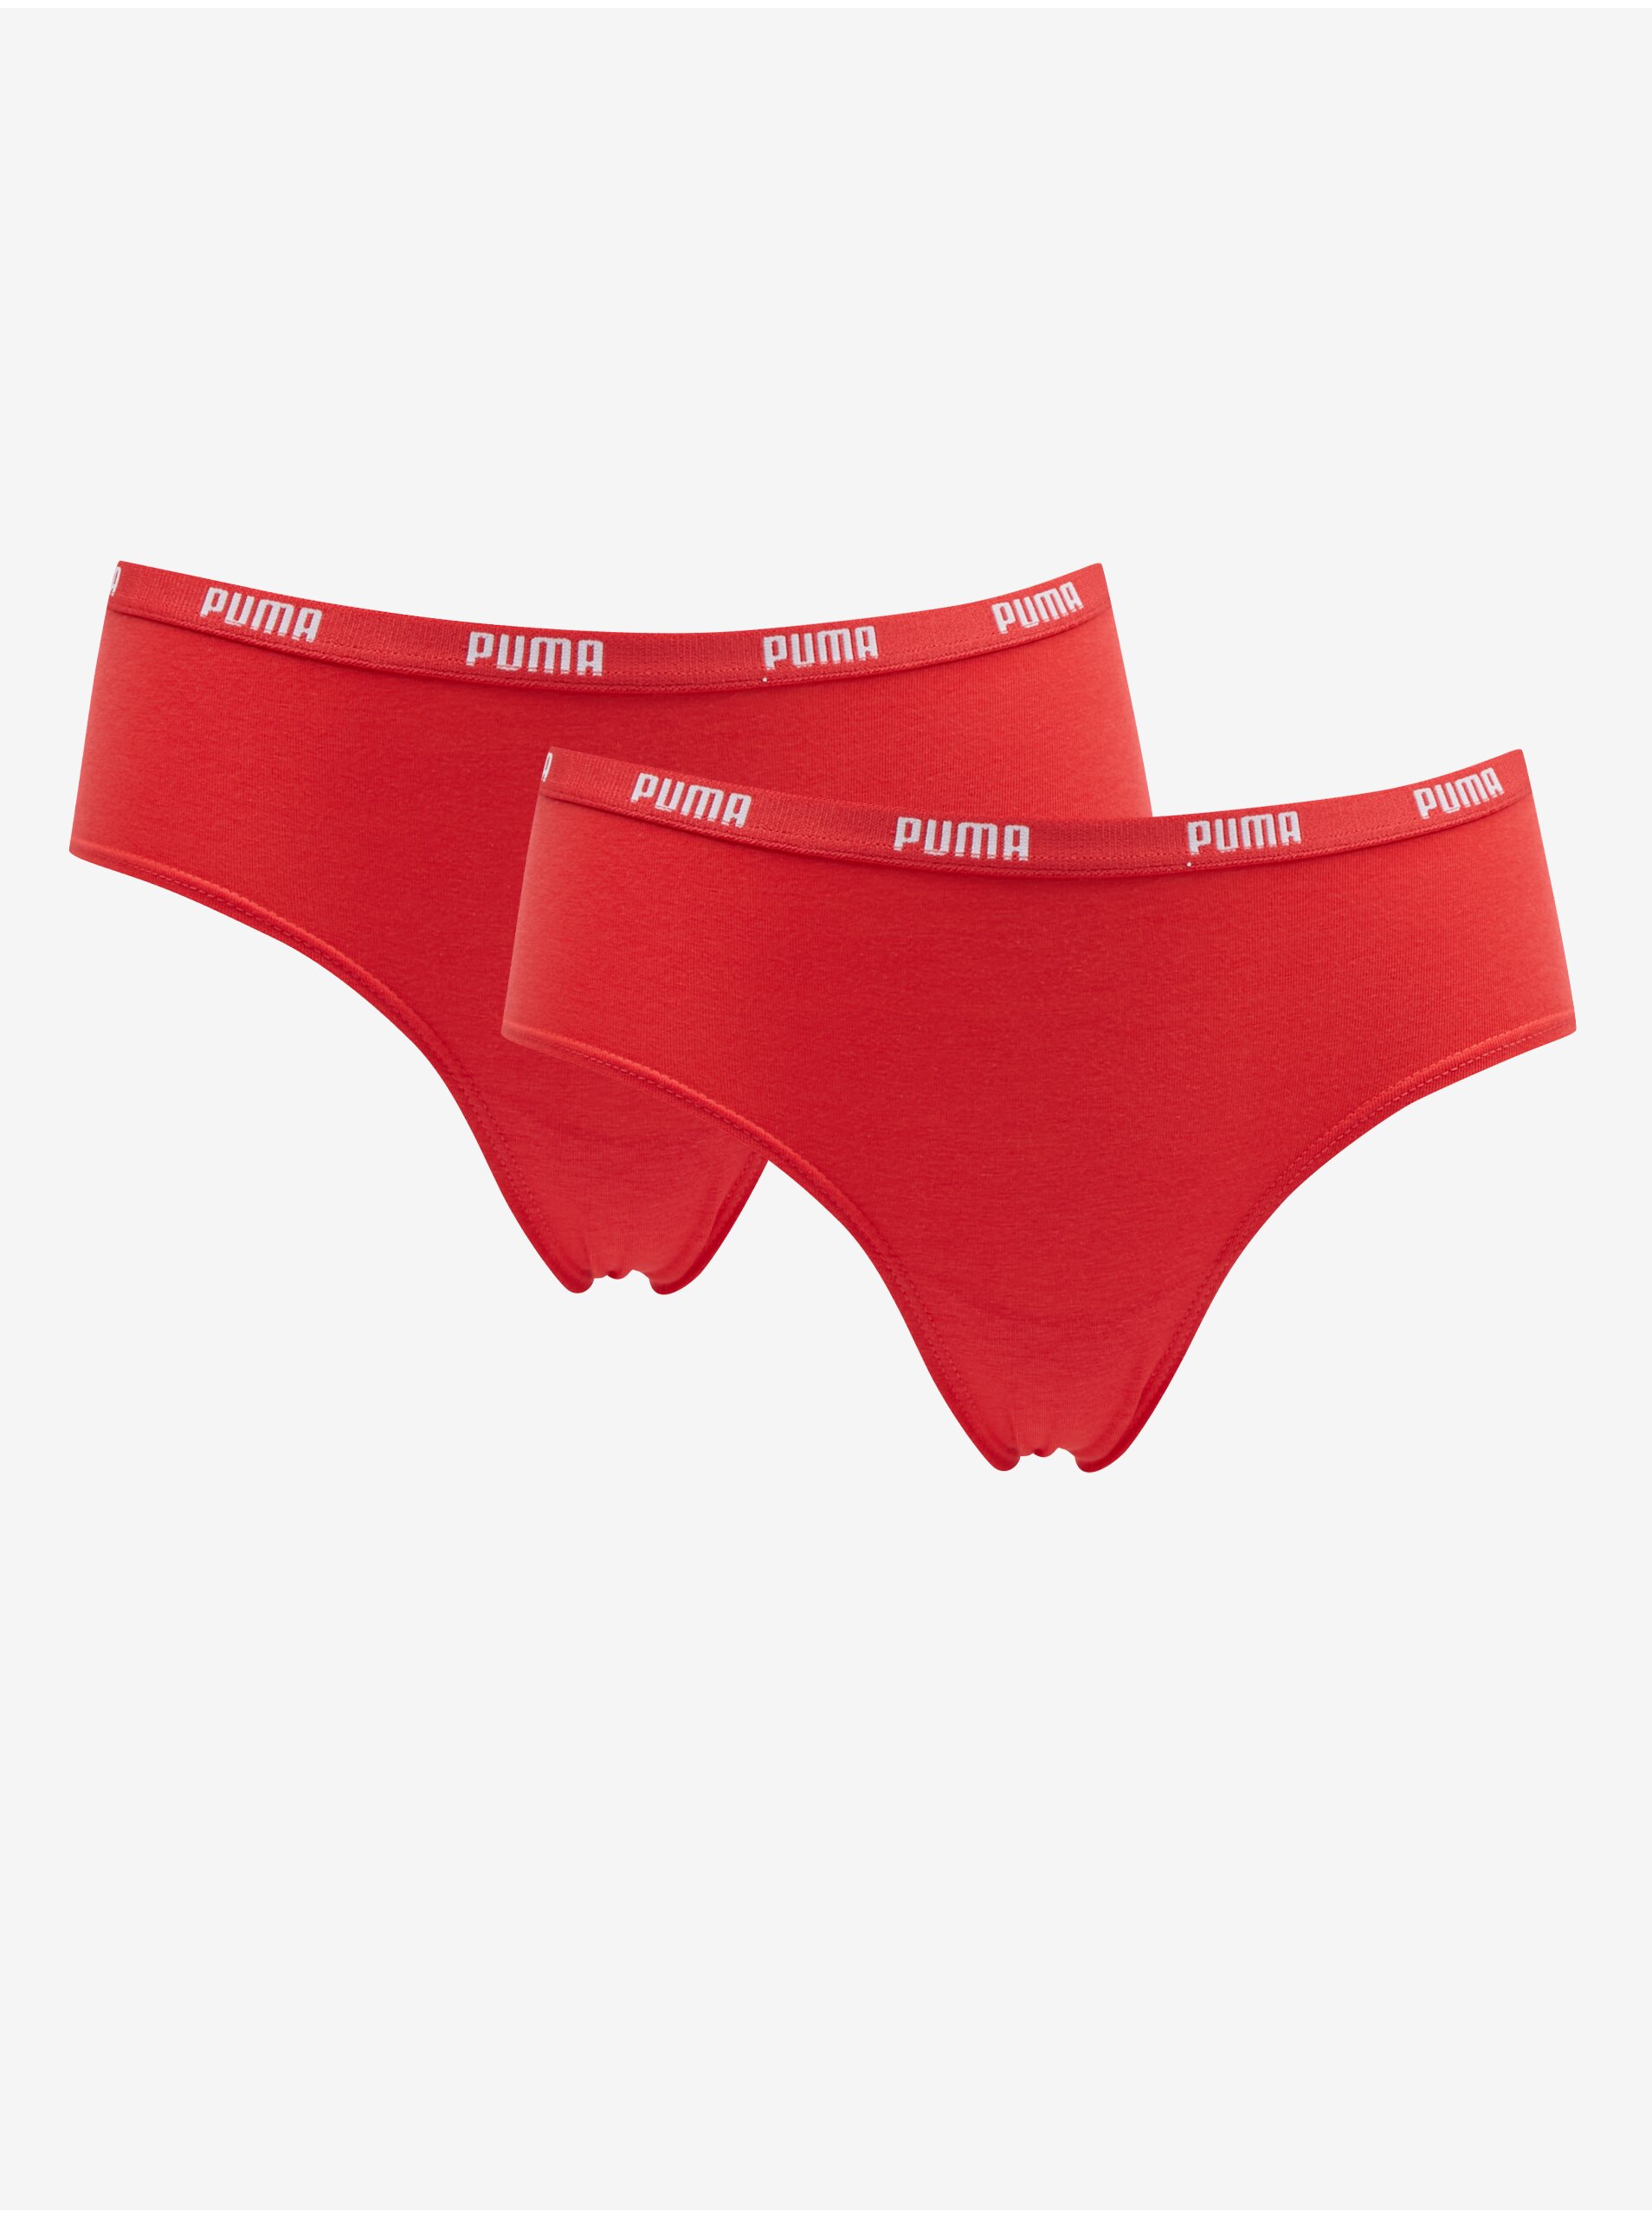 Lacno Súprava dvoch dámskych nohavičiek v červenej farbe Puma